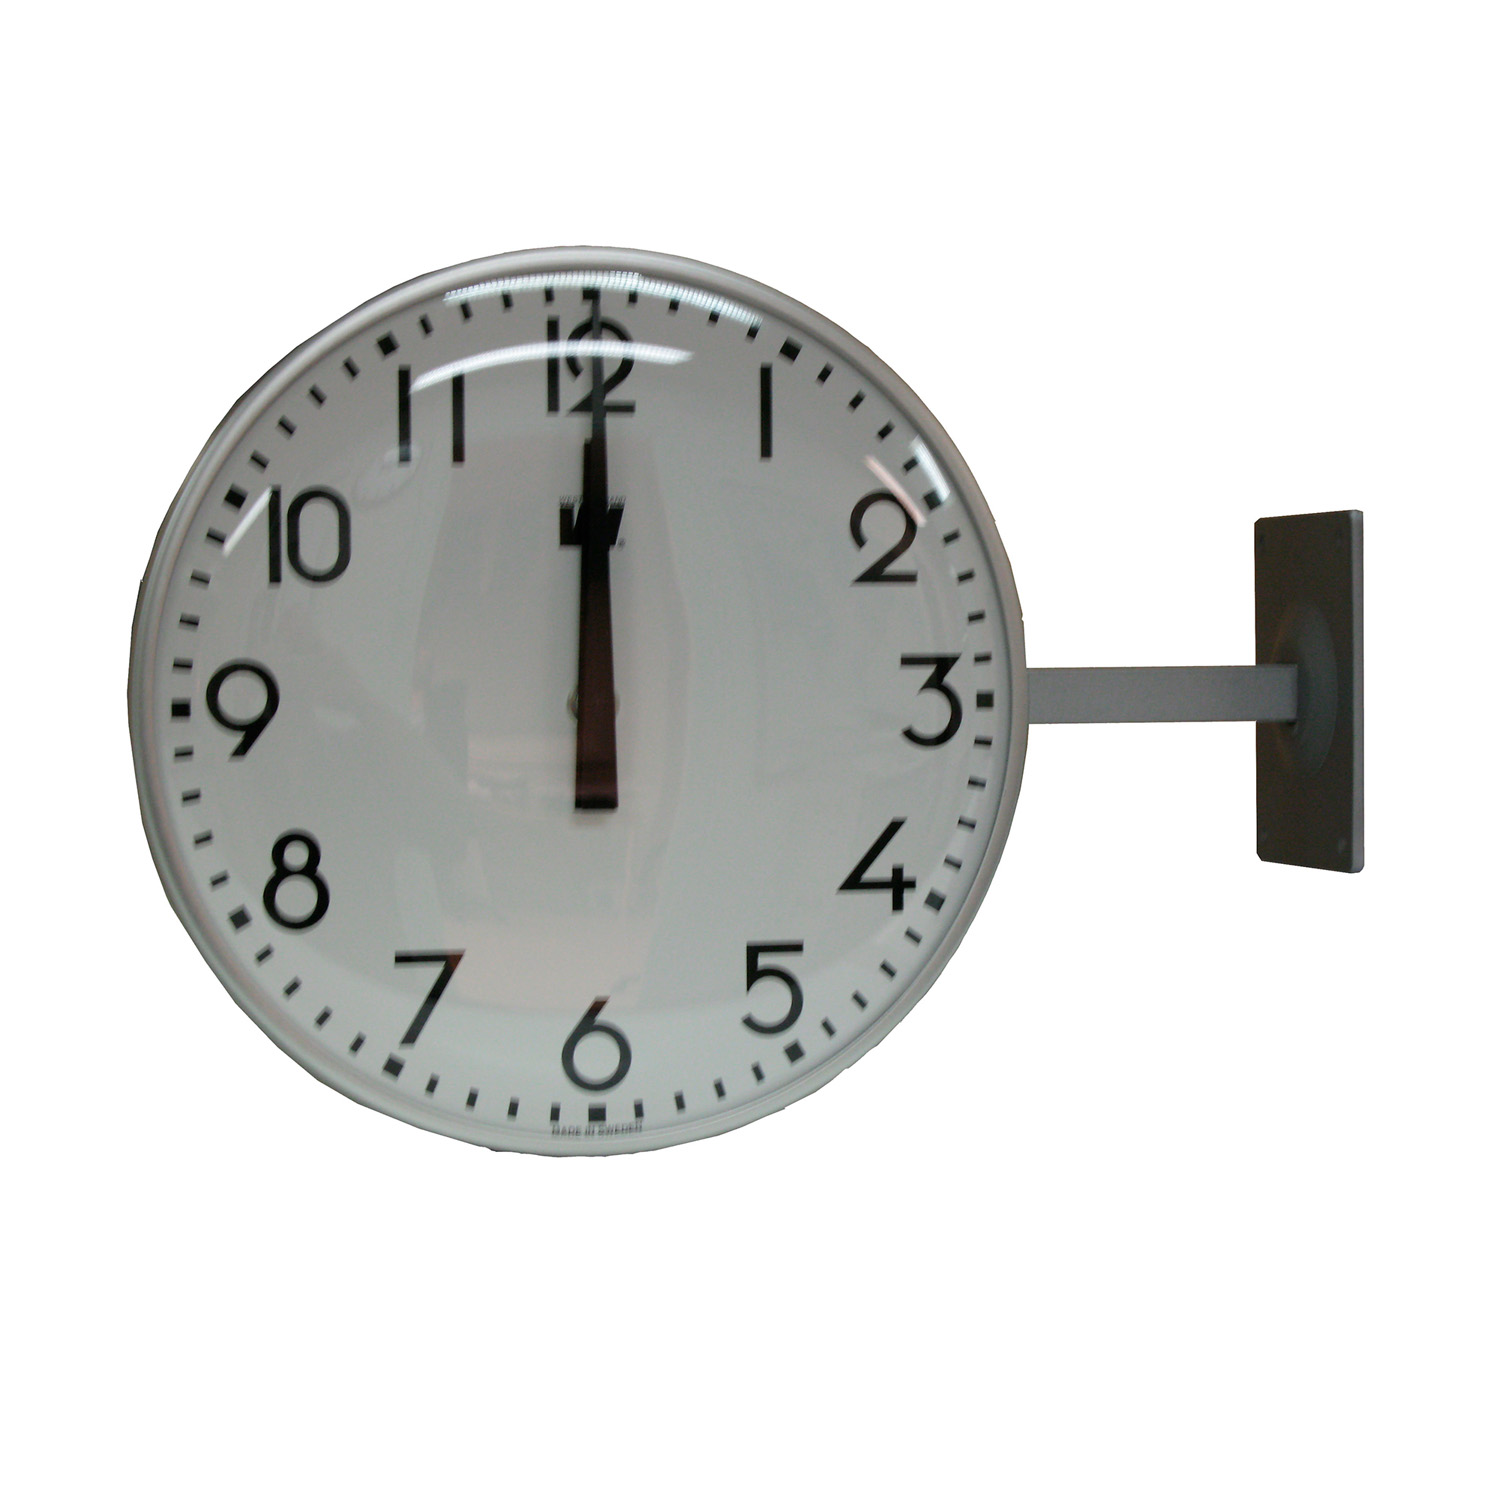 2310601030 Vingtor Stentofon Master clock